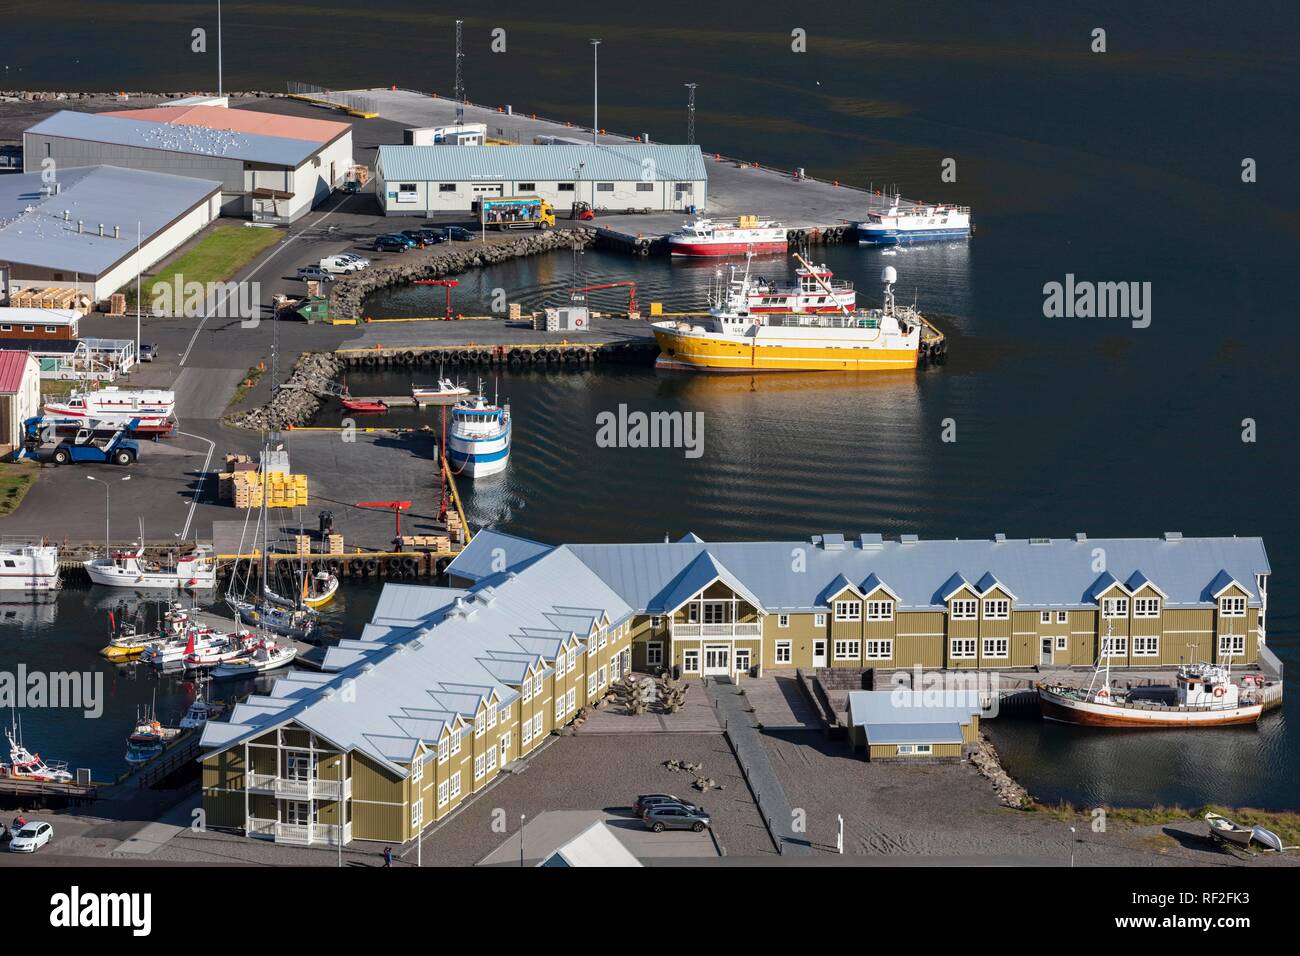 Port, bateaux et nouvel hôtel Siglo, Palma ; l'Islande Banque D'Images